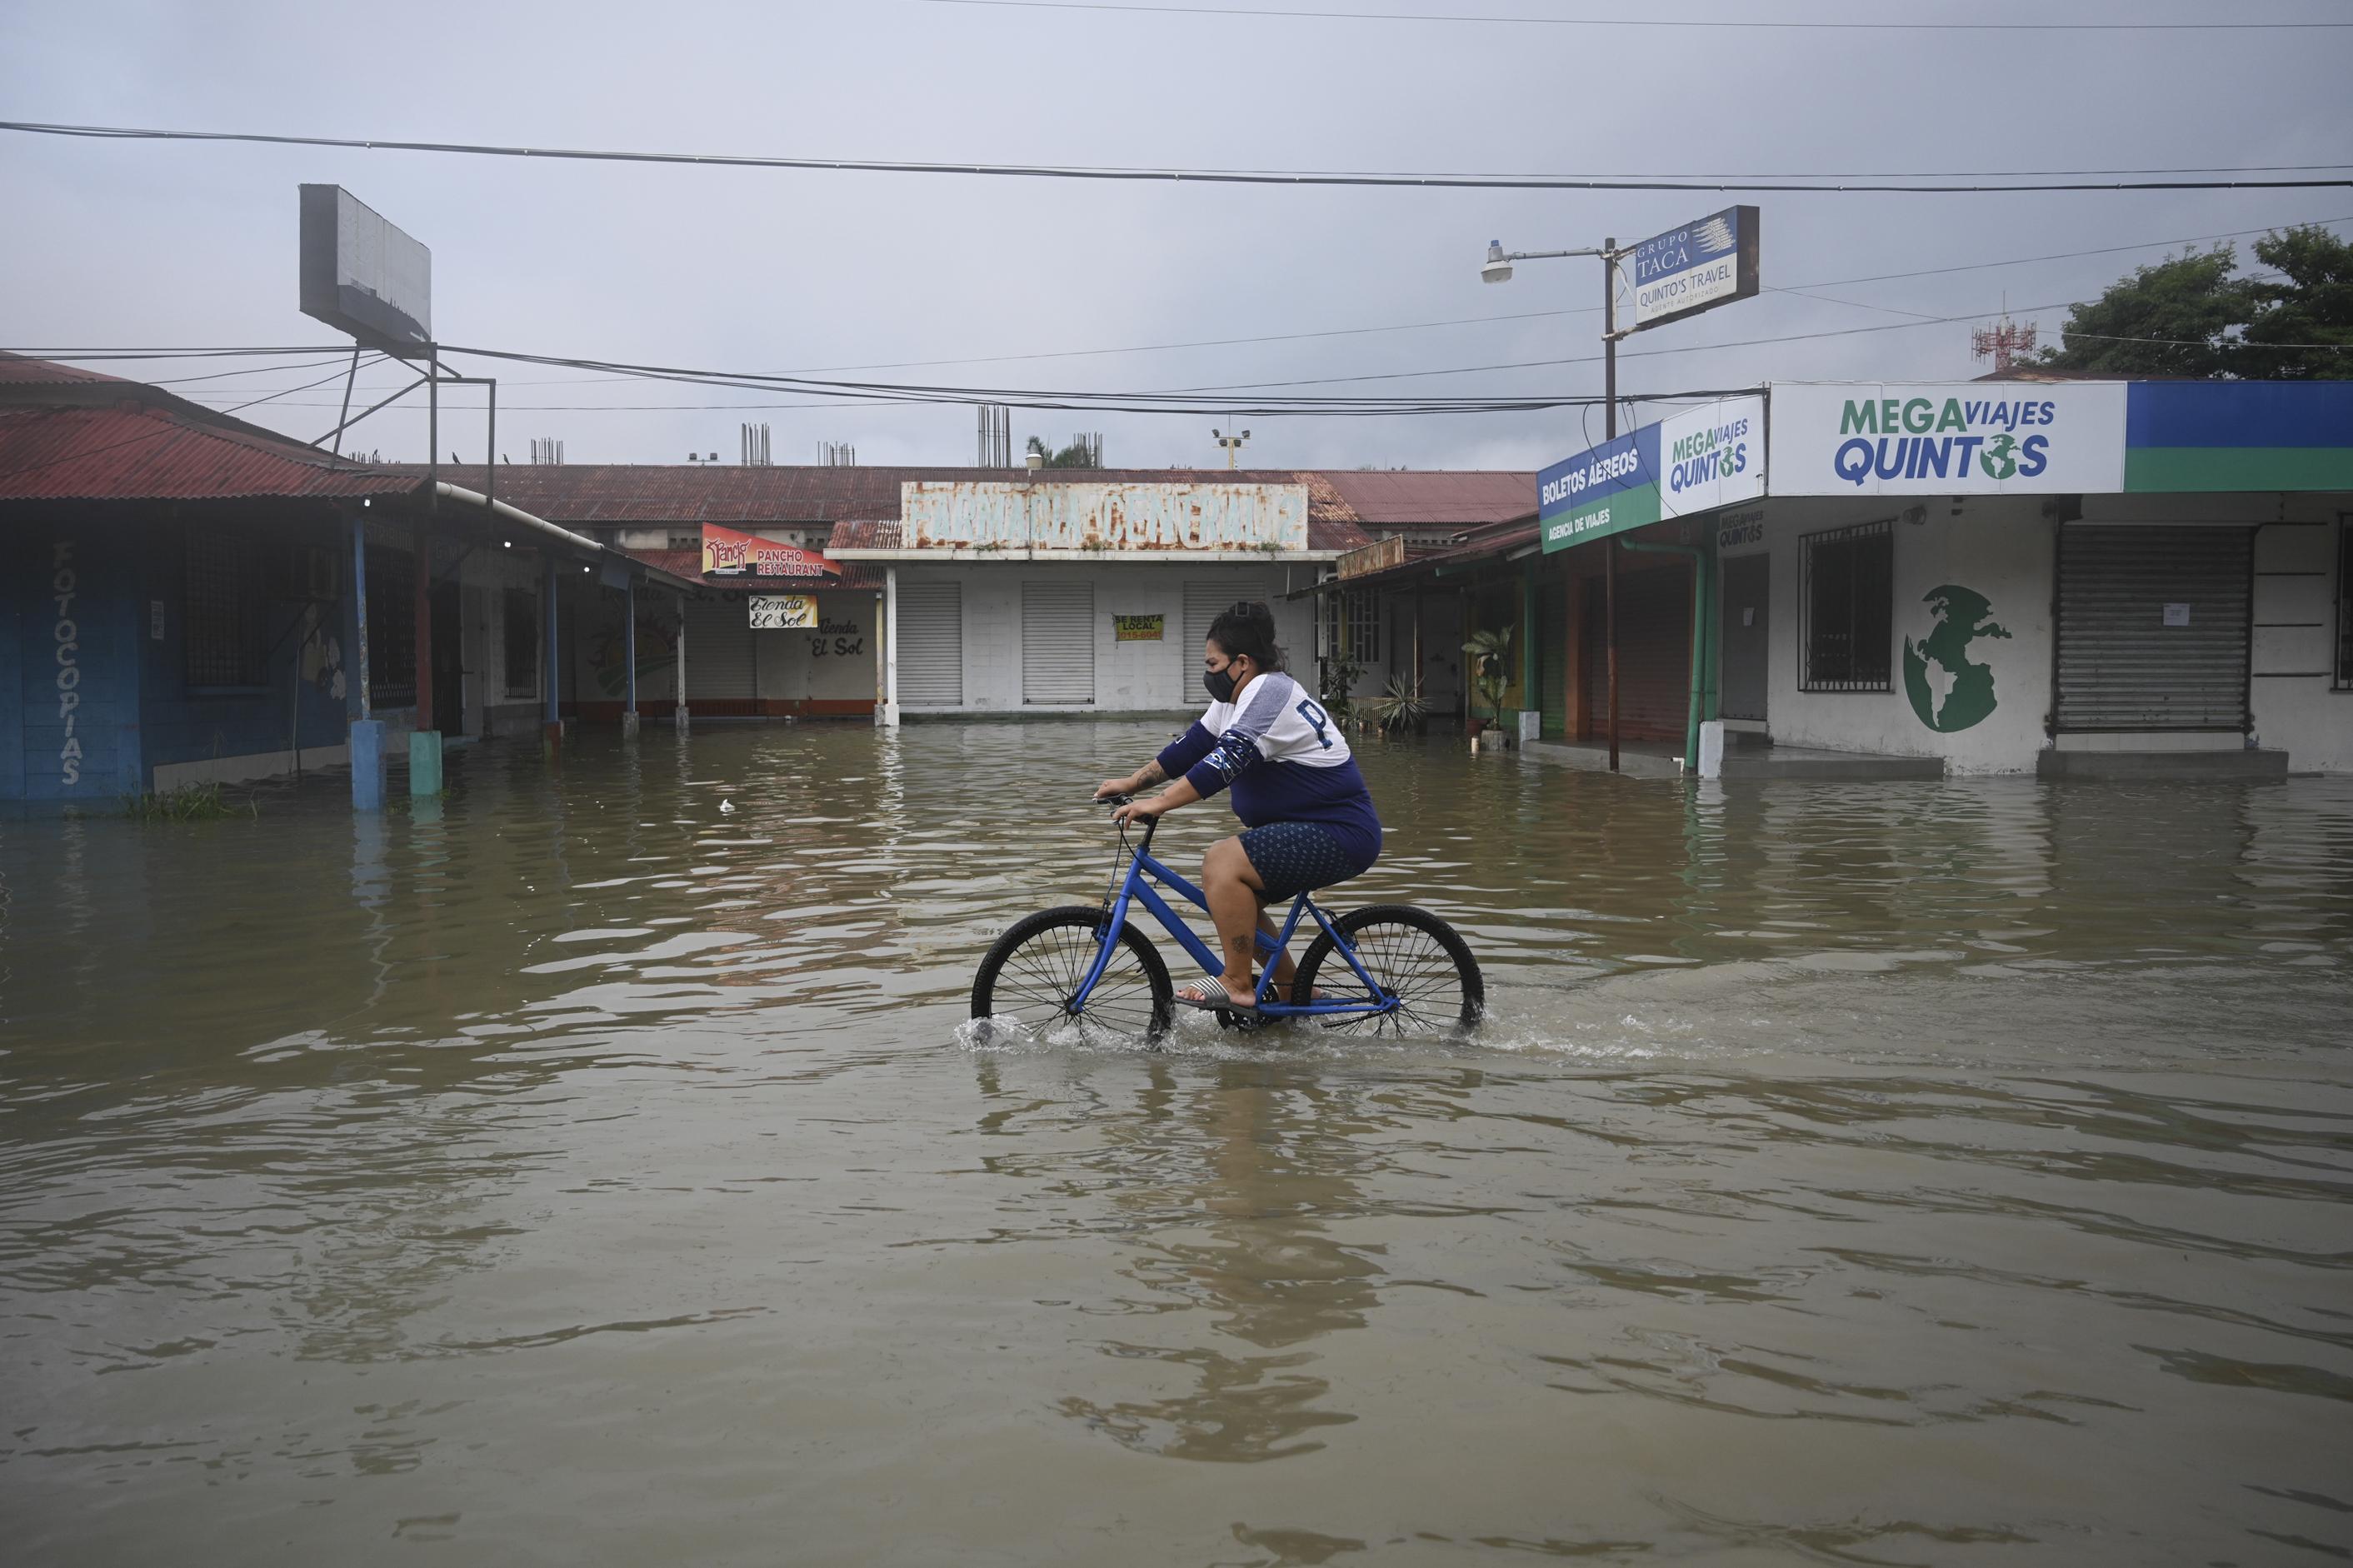 Una mujer anda en bicicleta en una calle inundada debido a las fuertes lluvias provocadas por el huracán Eta, ahora degradado a tormenta tropical, en Puerto Barrios, Izabal 310 km al norte de la Ciudad de Guatemala. Foto de Johan Ordoñez / AFP.